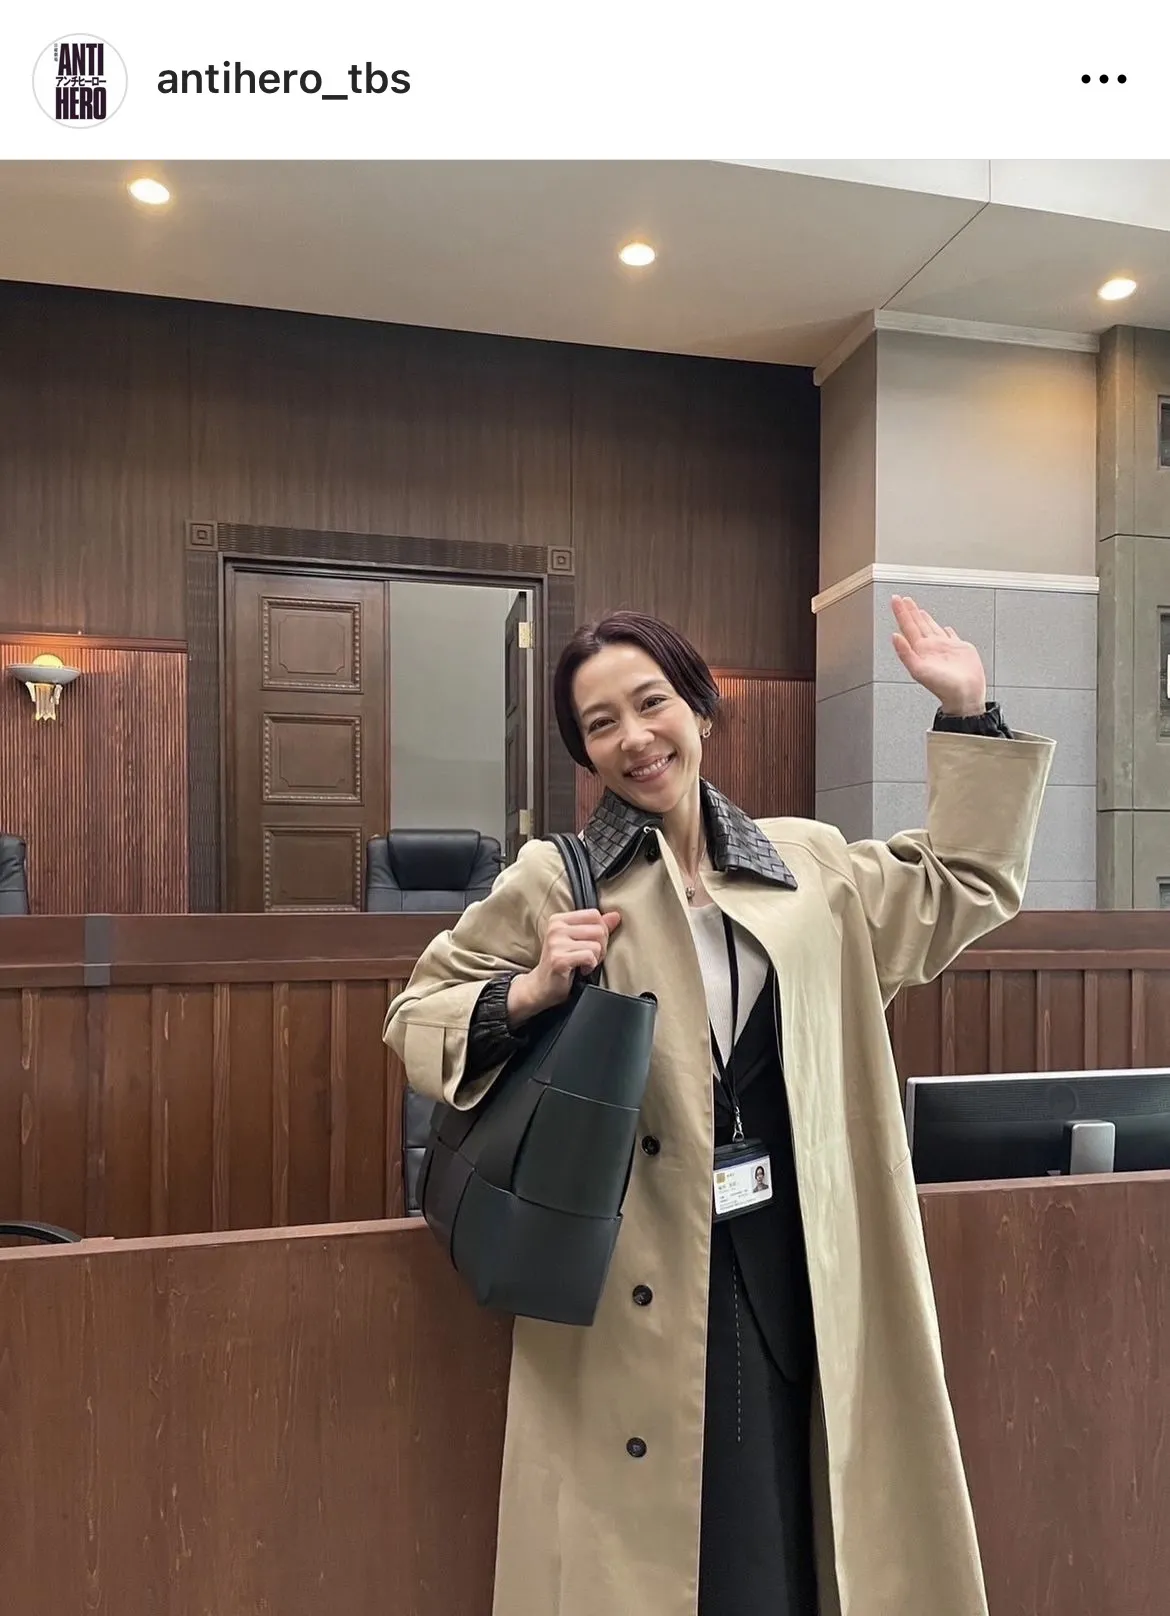 木村佳乃が裁判所でにこにこ笑顔…ギャップに癒されるショット